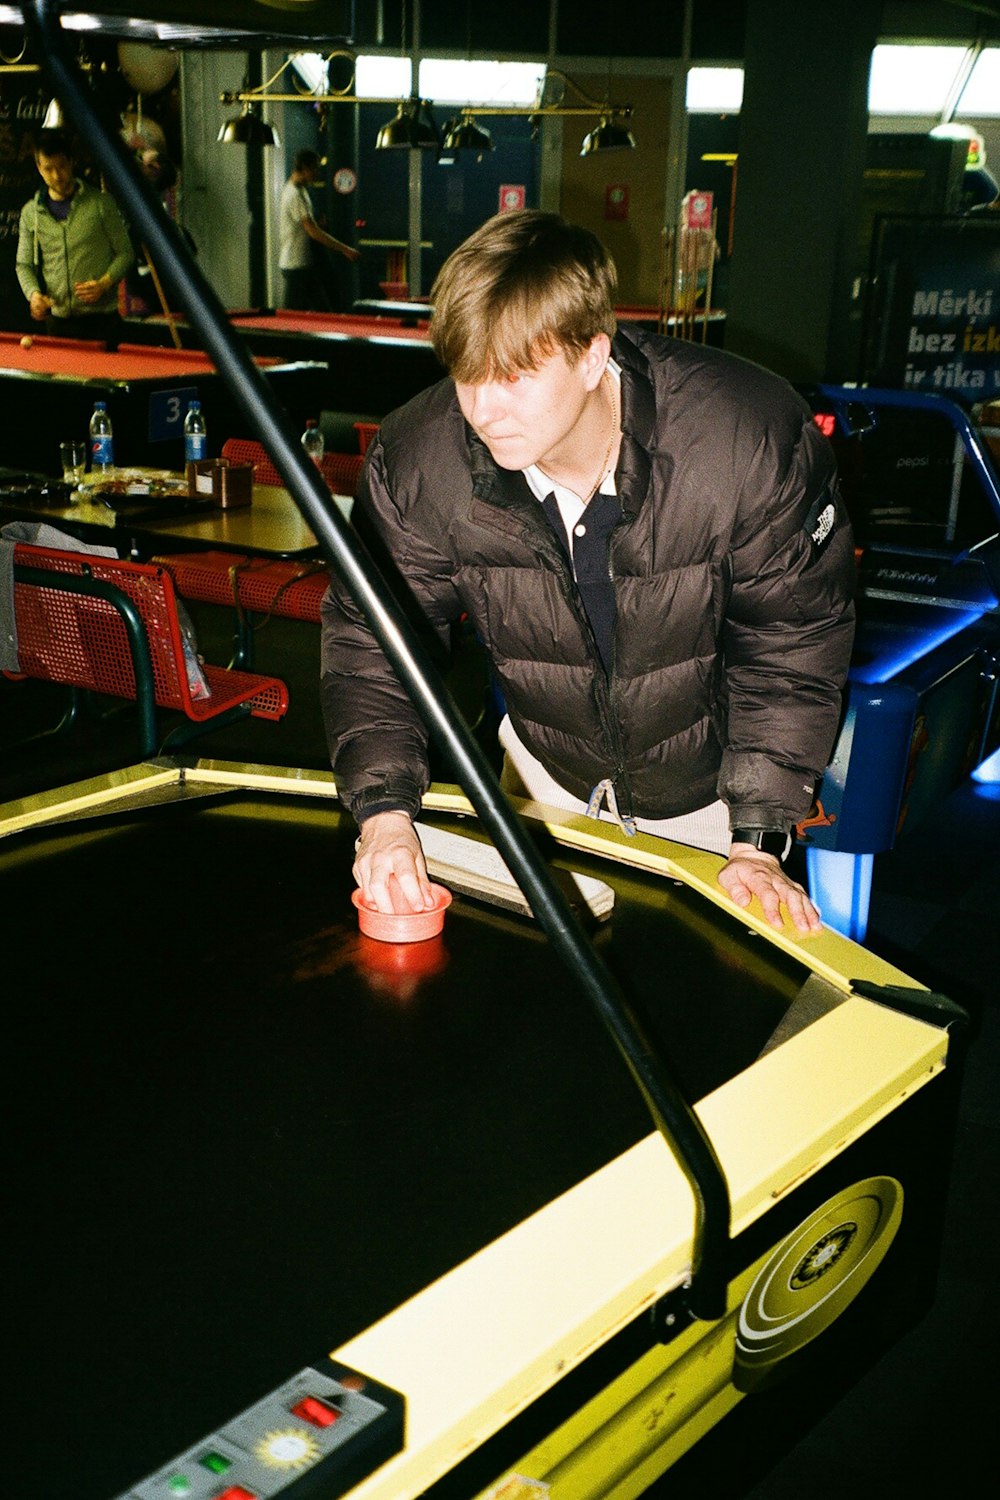 Una persona trabajando en una máquina